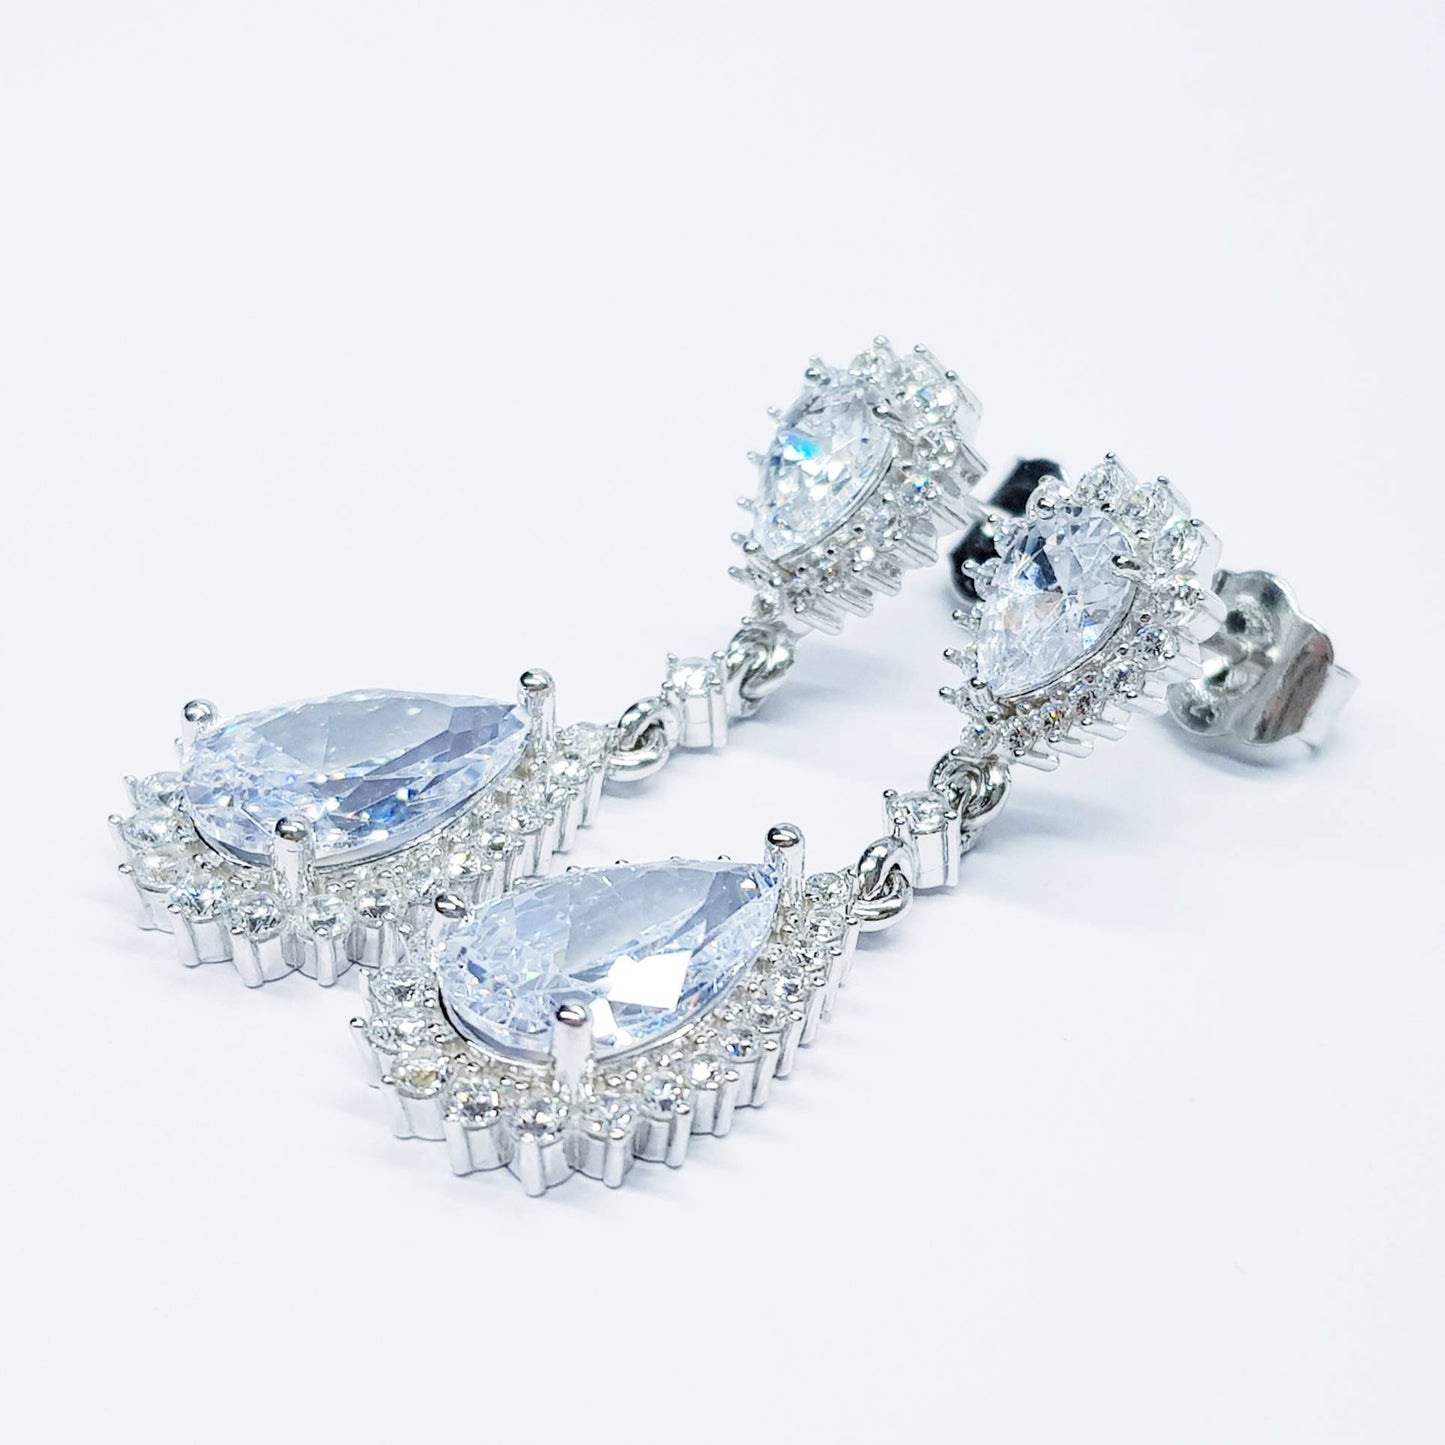 Long teardrop faux Diamond Earrings set in sterling silver